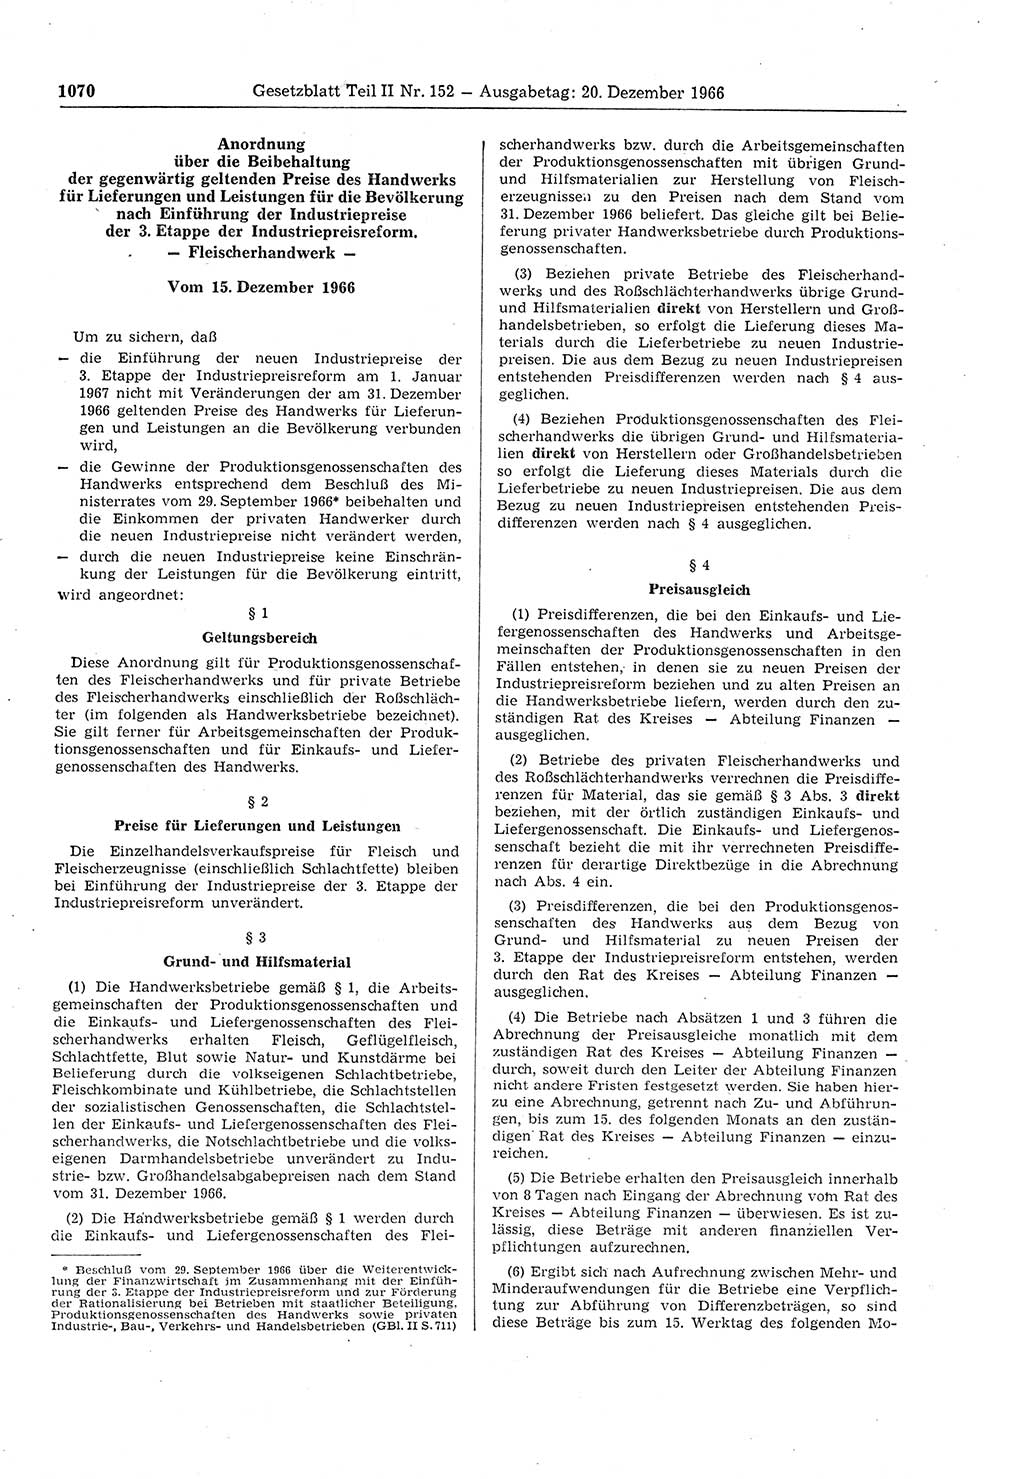 Gesetzblatt (GBl.) der Deutschen Demokratischen Republik (DDR) Teil ⅠⅠ 1966, Seite 1070 (GBl. DDR ⅠⅠ 1966, S. 1070)